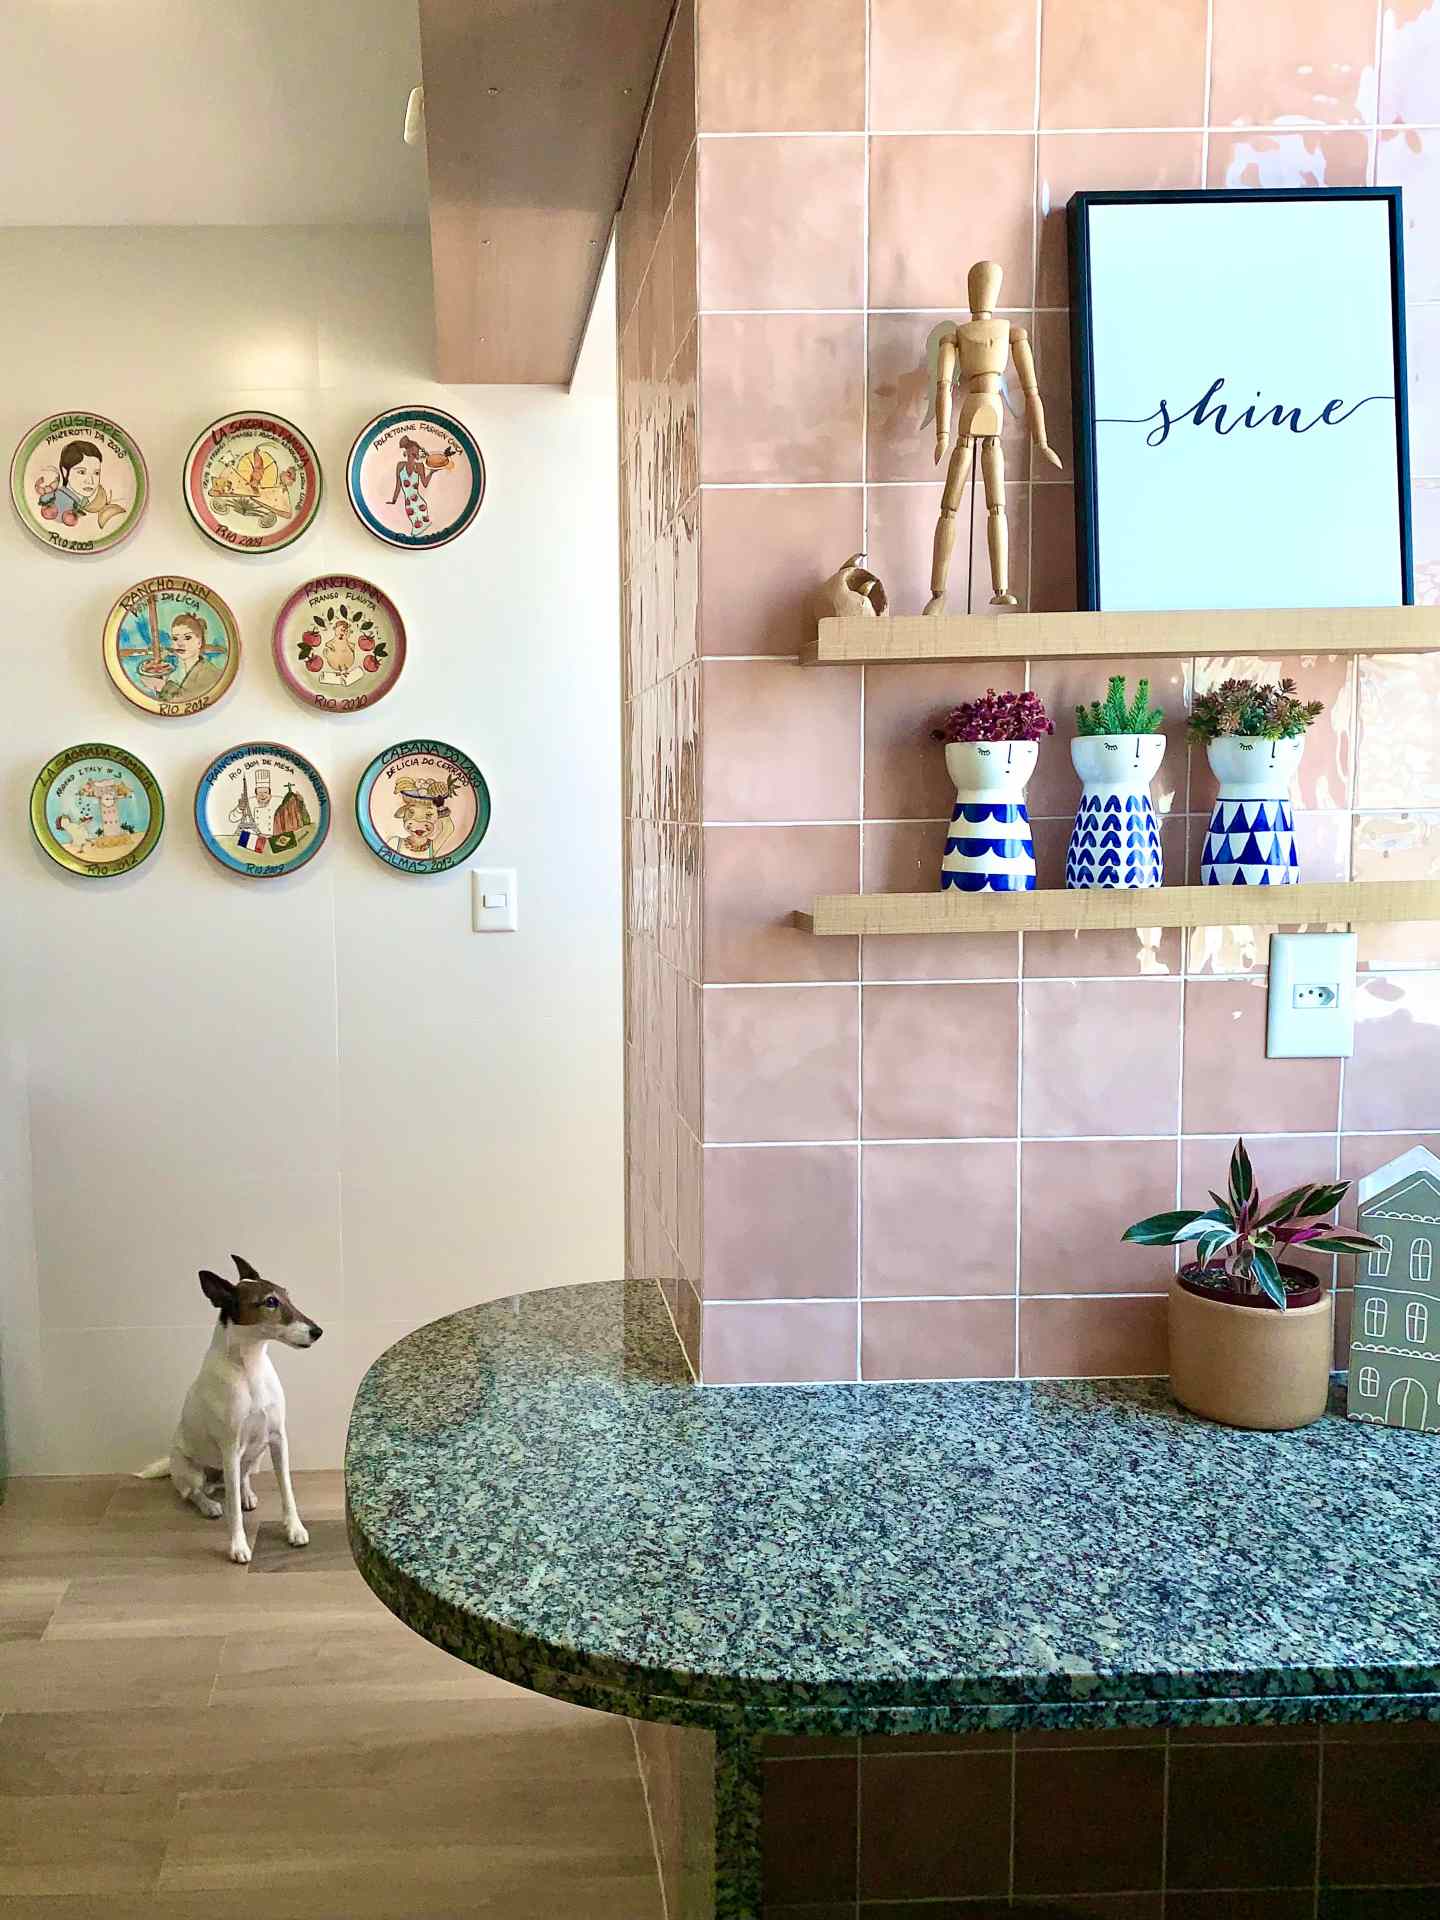 À frente, bancada de cozinha com parede de azulejos rosas. Ao fundo, parede com quadros decorativos. Há um cachorro no chão